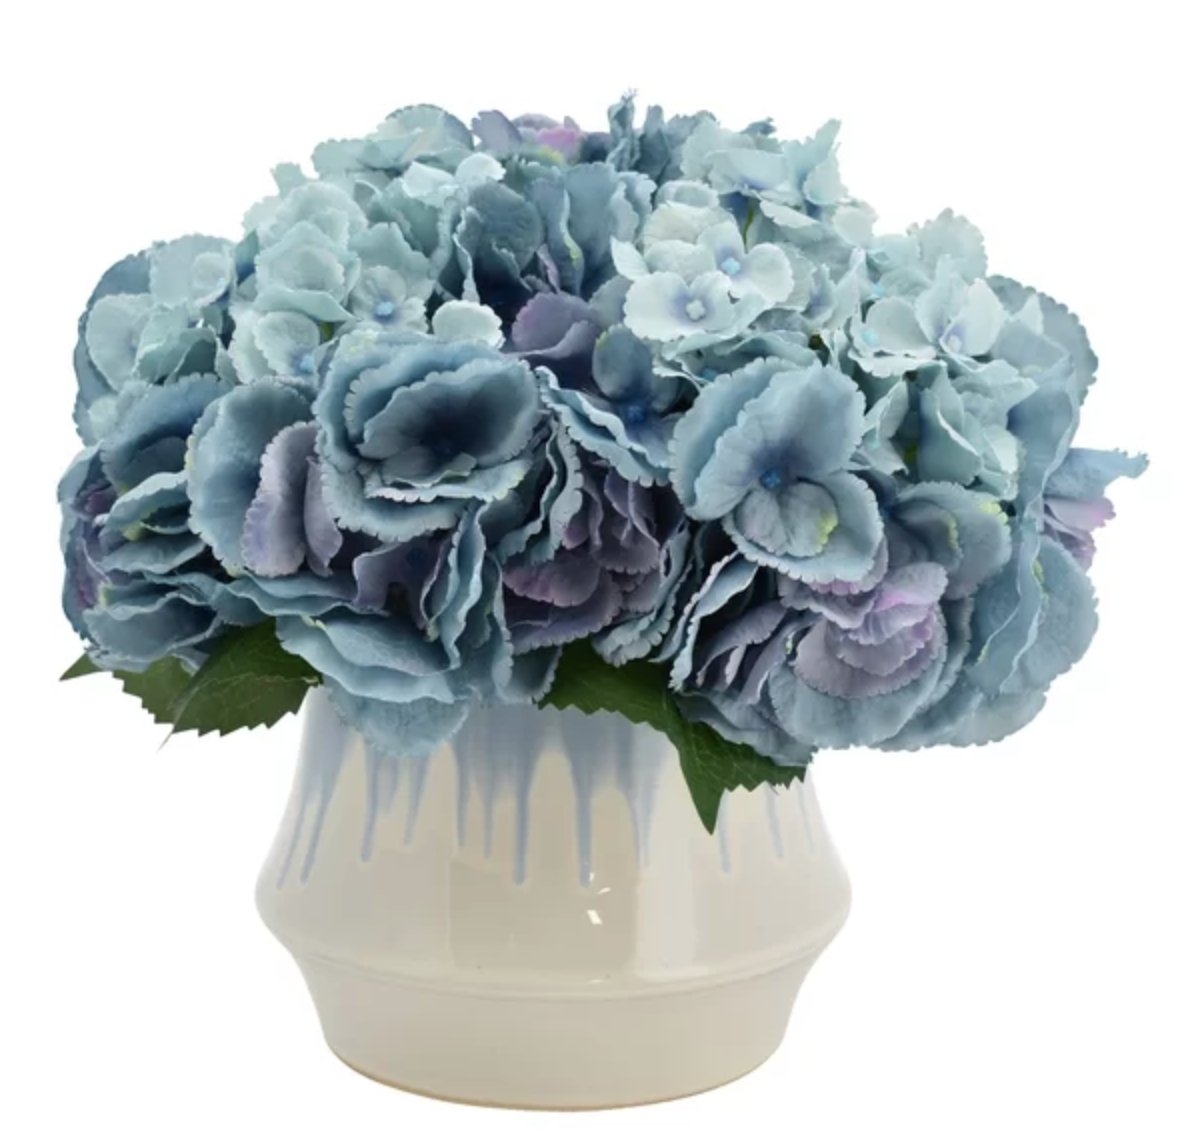 Hydrangeas Bouquet Floral Arrangement in Pot - Image 0